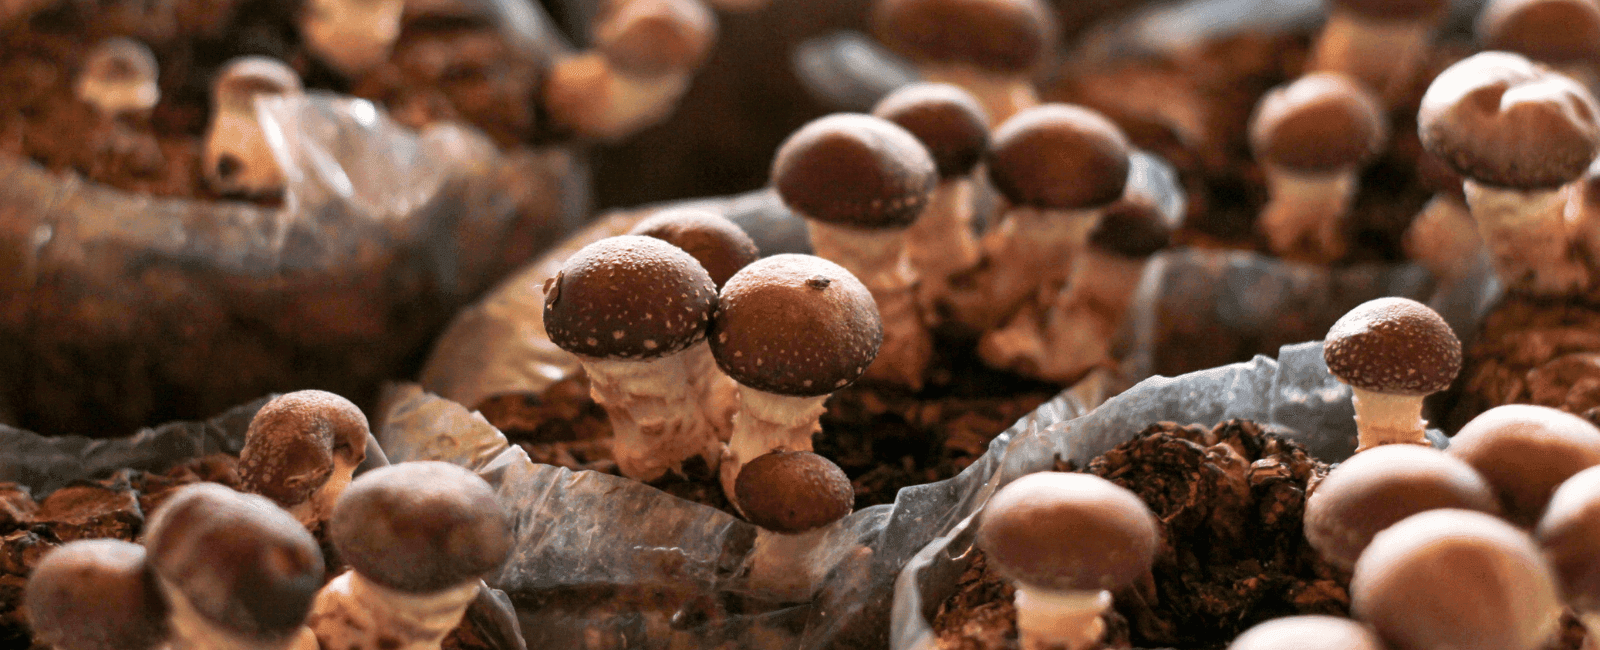 The Mushroom Supplement Conundrum: Fruiting Bodies vs. Mycelium